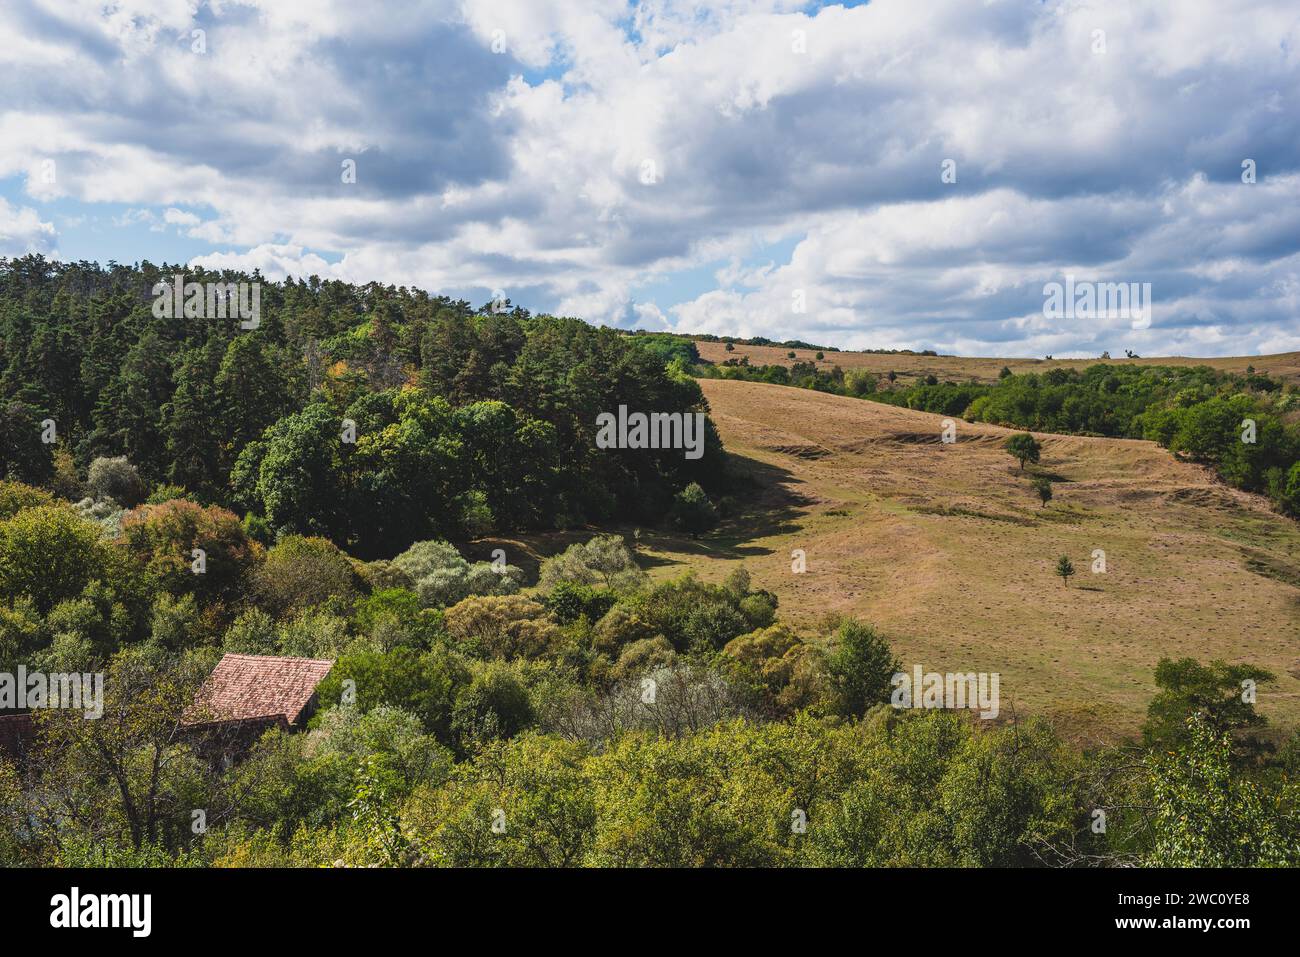 Eine malerische Landschaft mit üppigen grünen Bäumen und flauschigen weißen Wolken, die über ihnen schweben. Rumänien Stockfoto